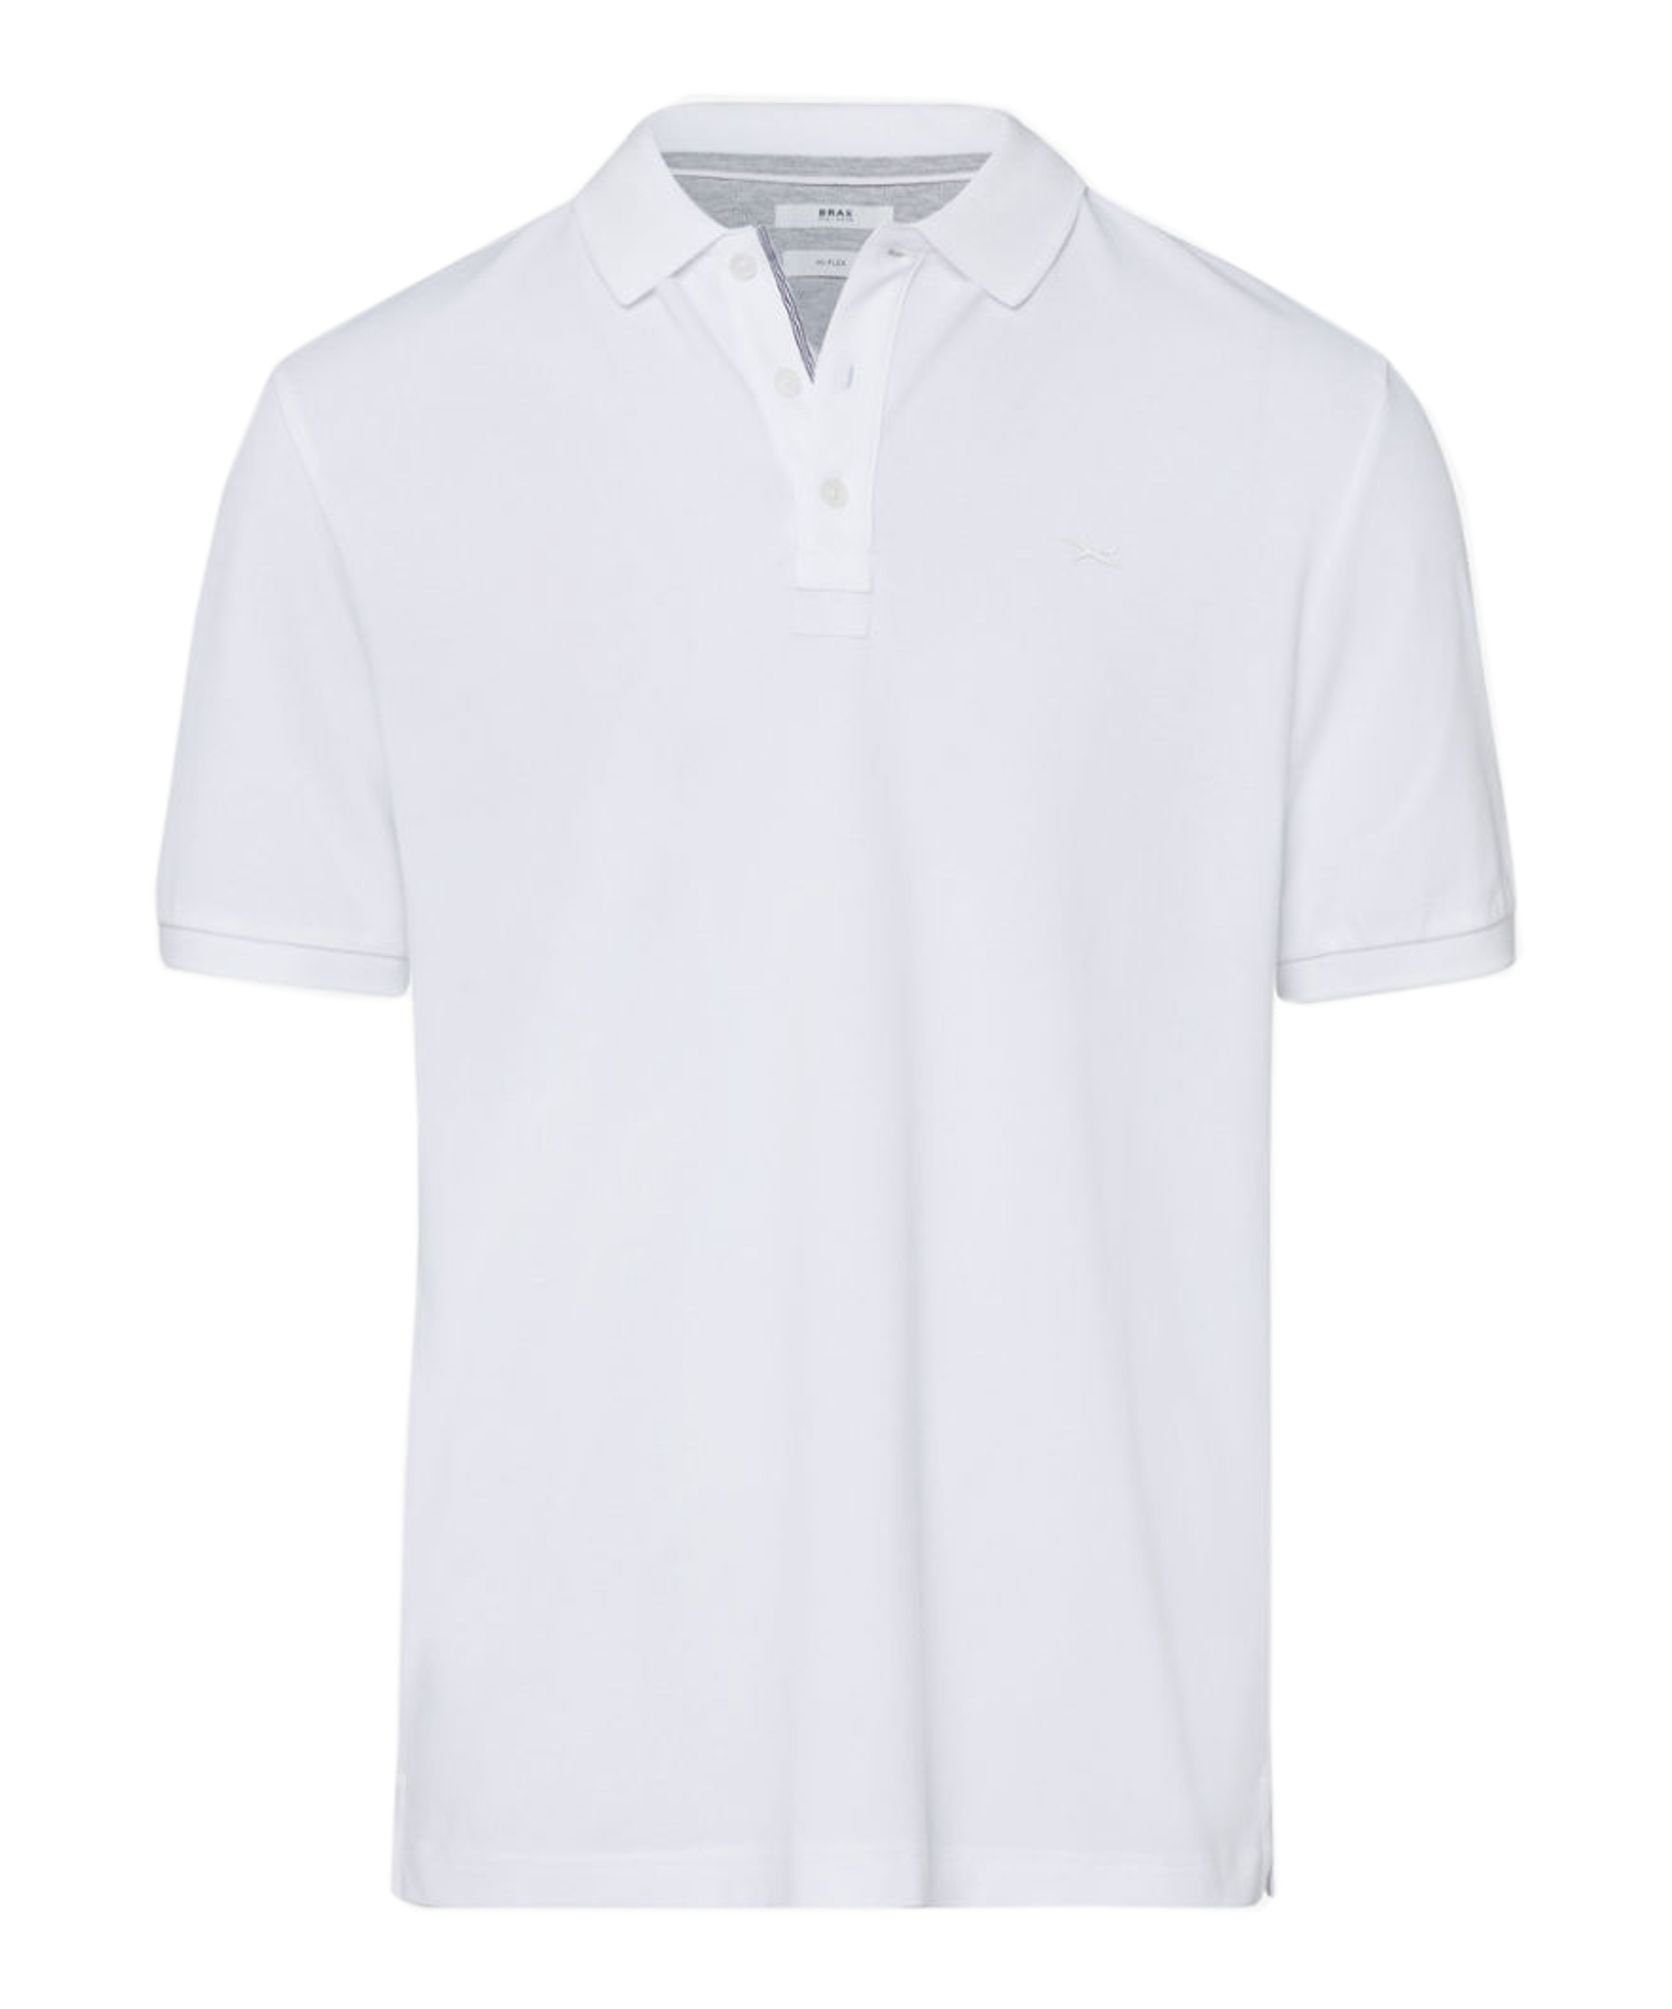 Brax Poloshirt Style Pete (24-7507) White (99)